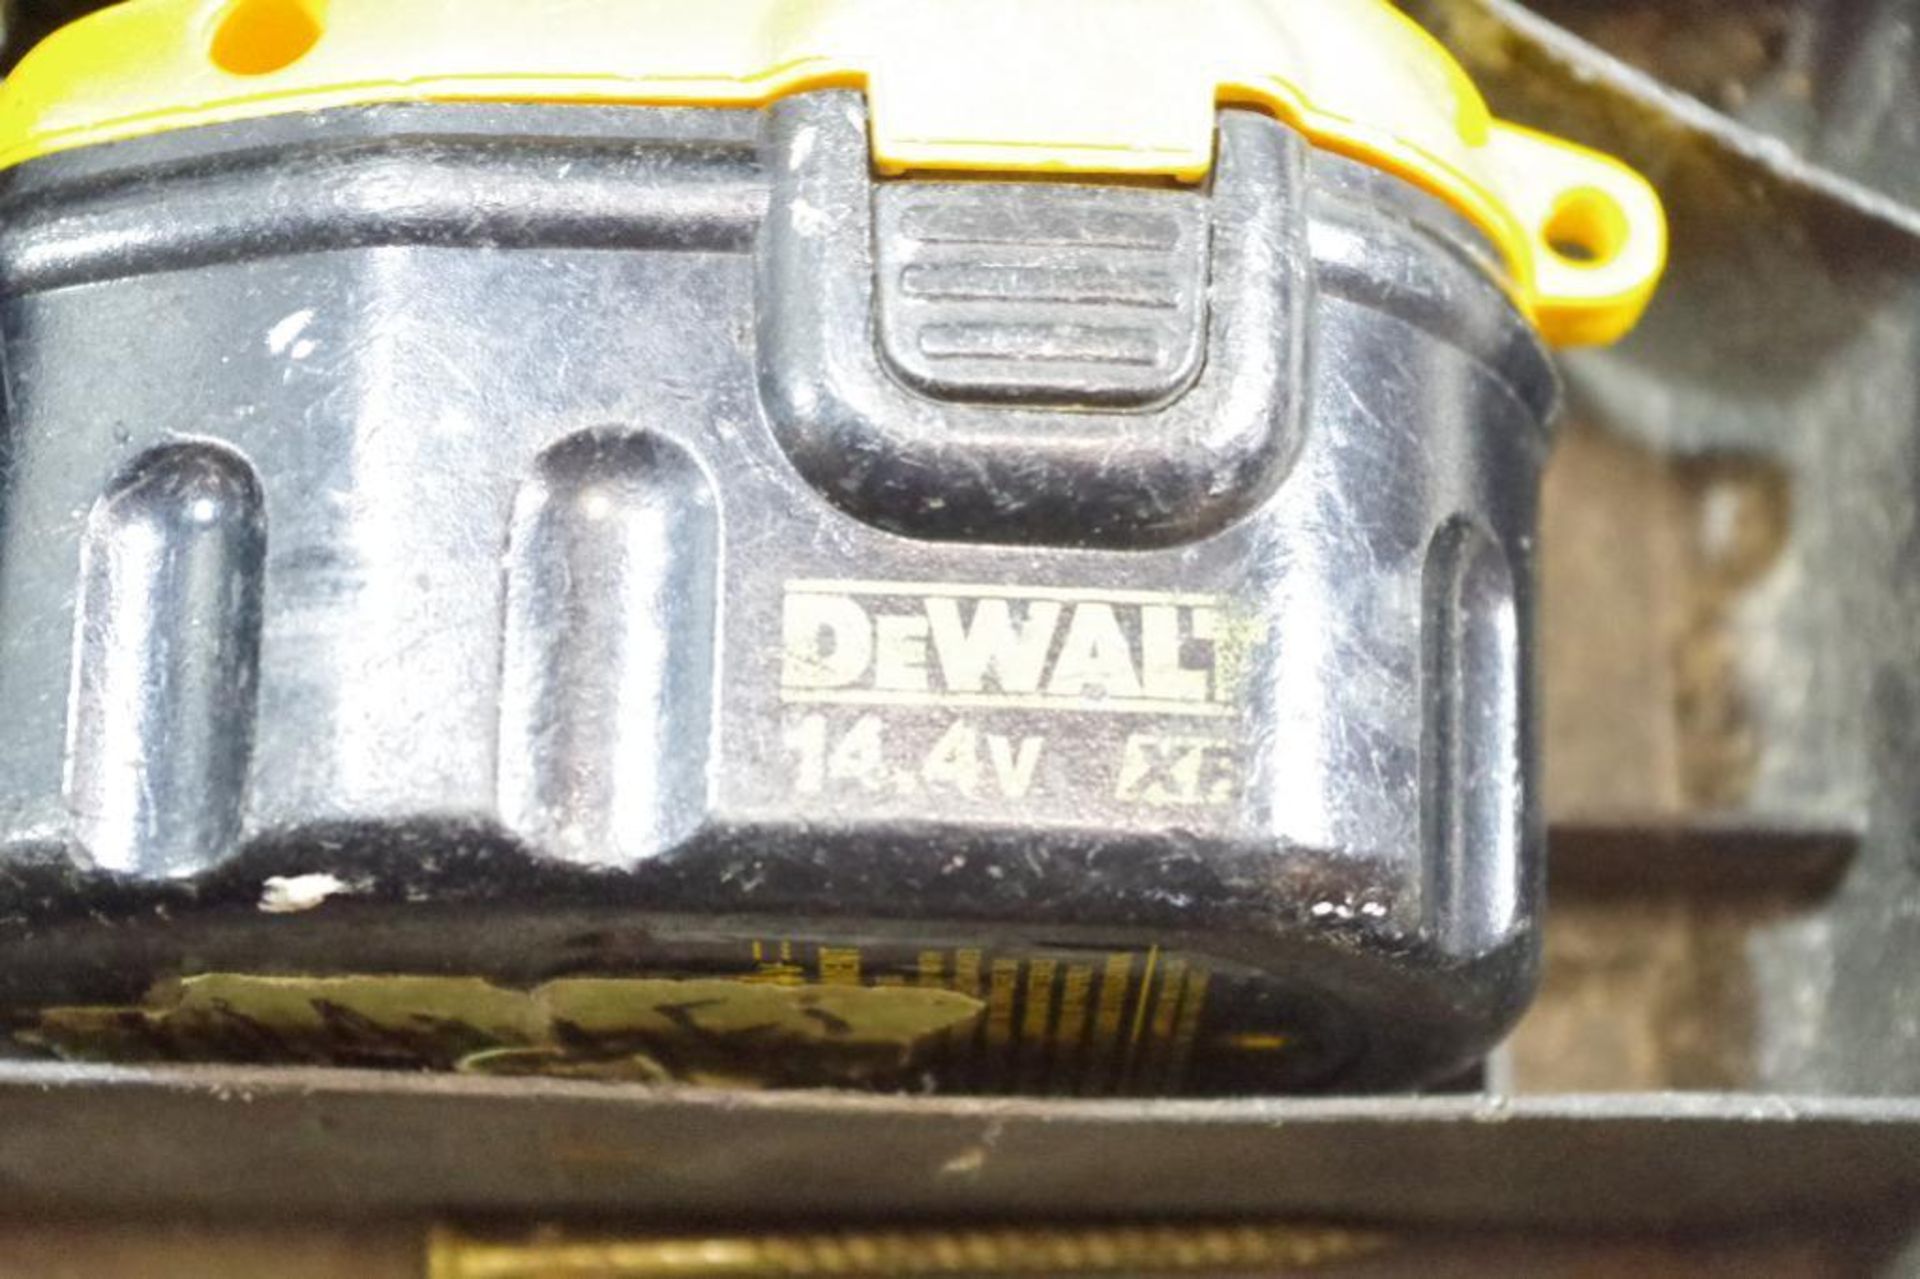 DEWALT 14.4V Drill w/ (2) Batteries, Charger & Case - Image 2 of 3